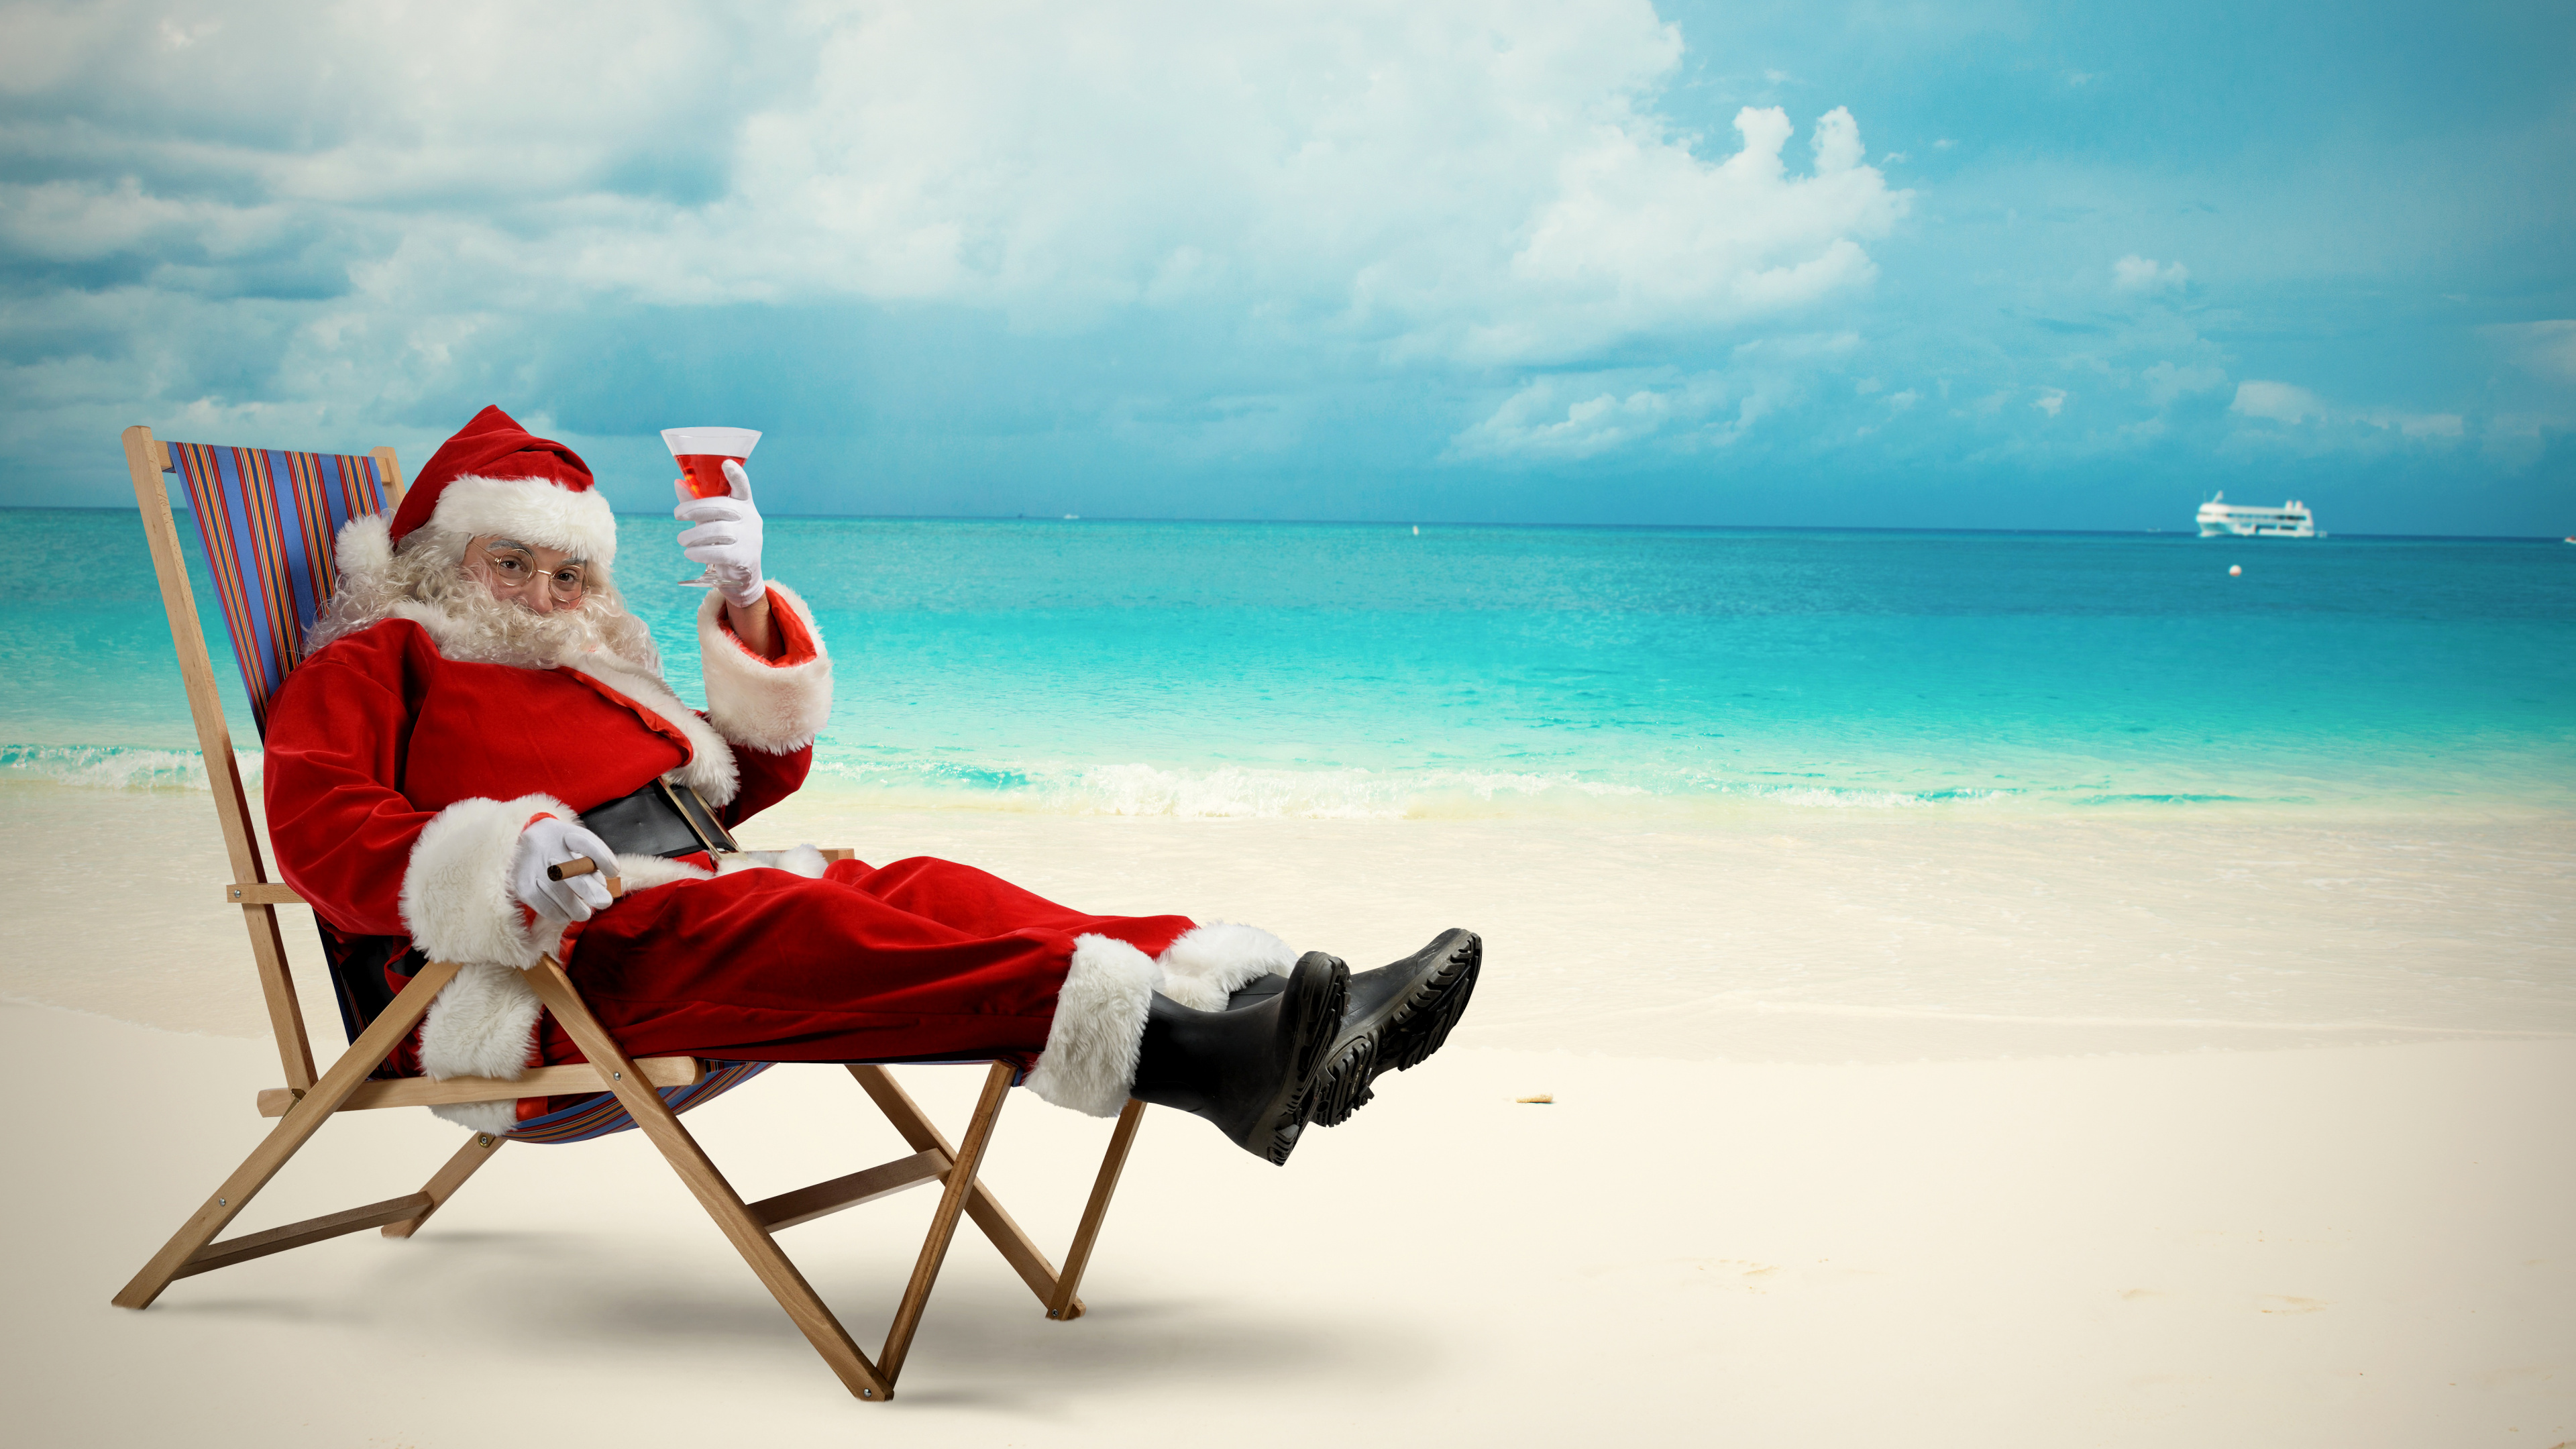 Weihnachtsmann, Weihnachten, Strand, Meer, Urlaub. Wallpaper in 3840x2160 Resolution